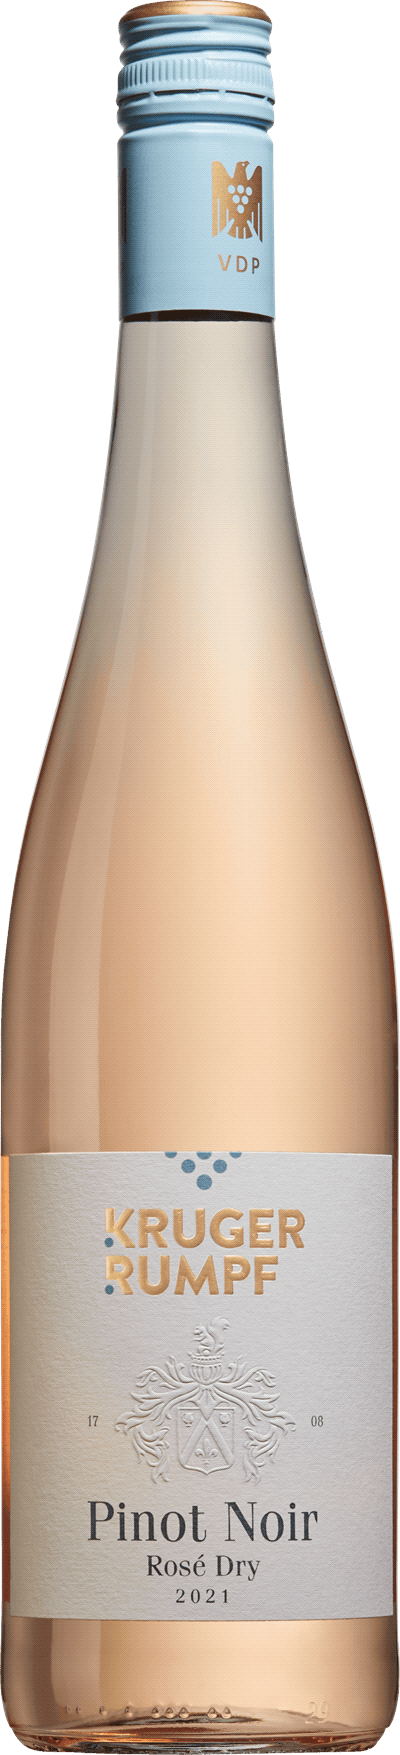 Kruger-Rumpf Pinot Noir rosé, 2021